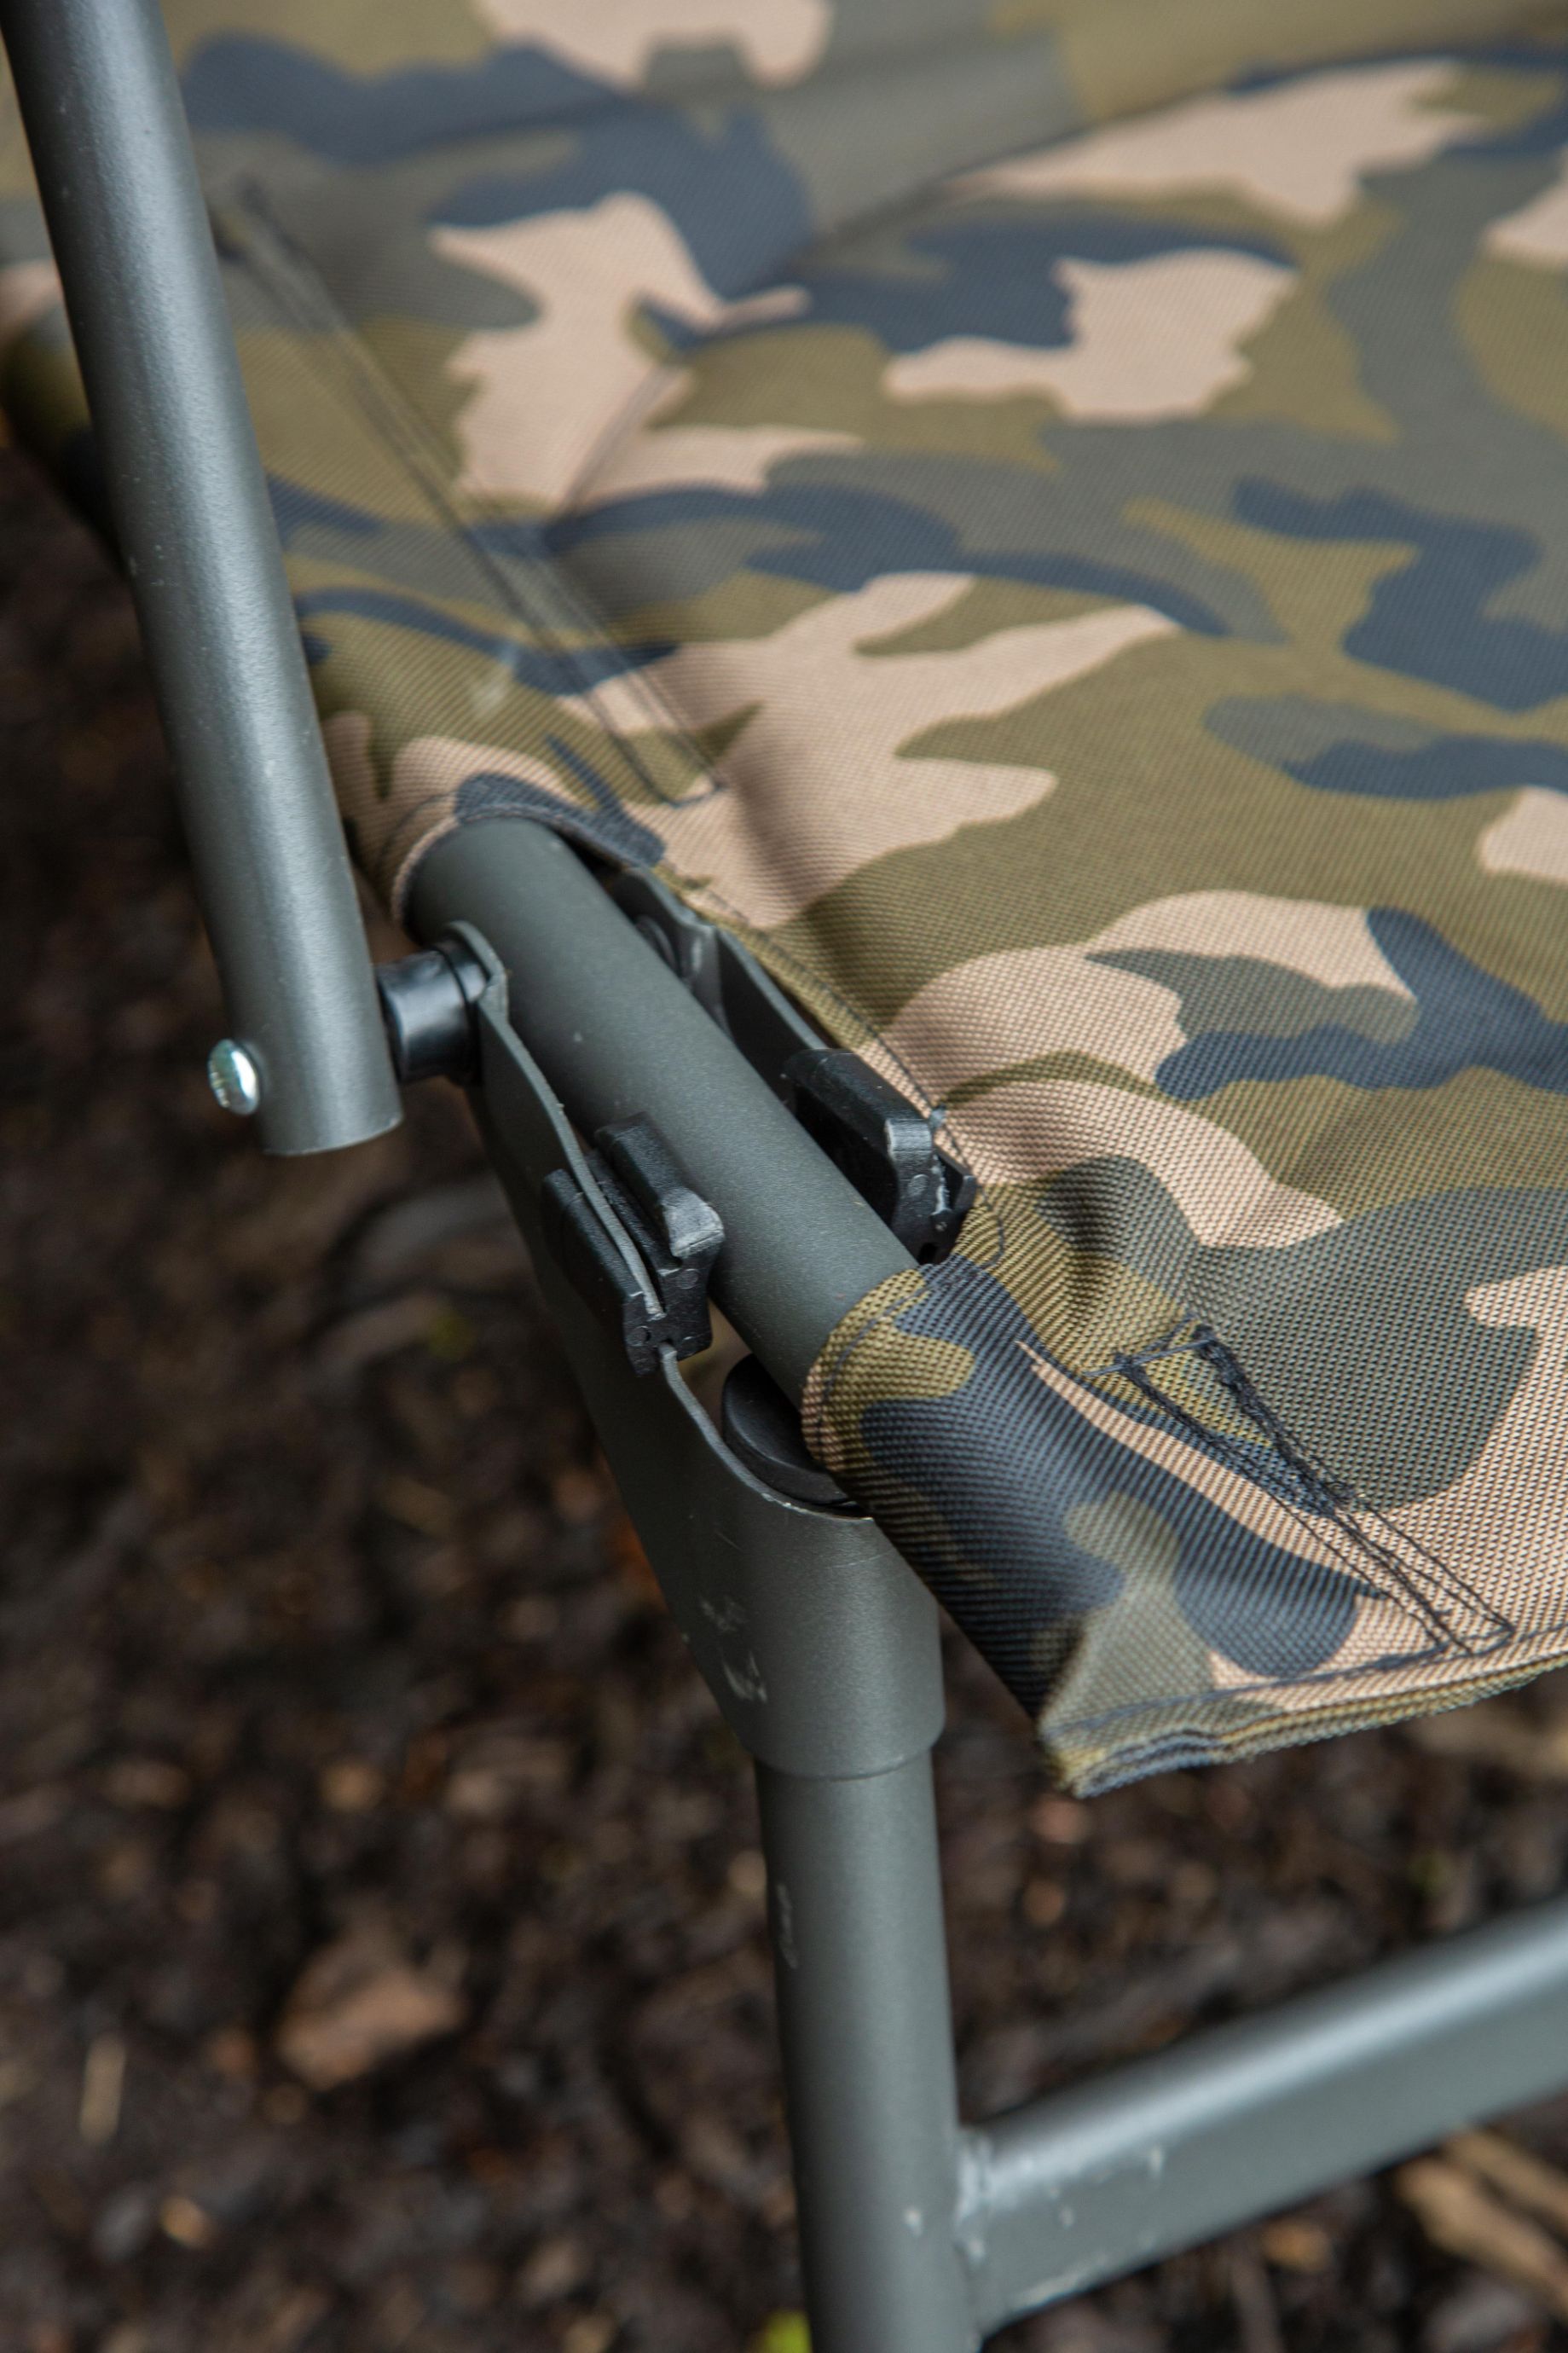 Ultimate Recliner Comfort Chair Camo Karperstoel